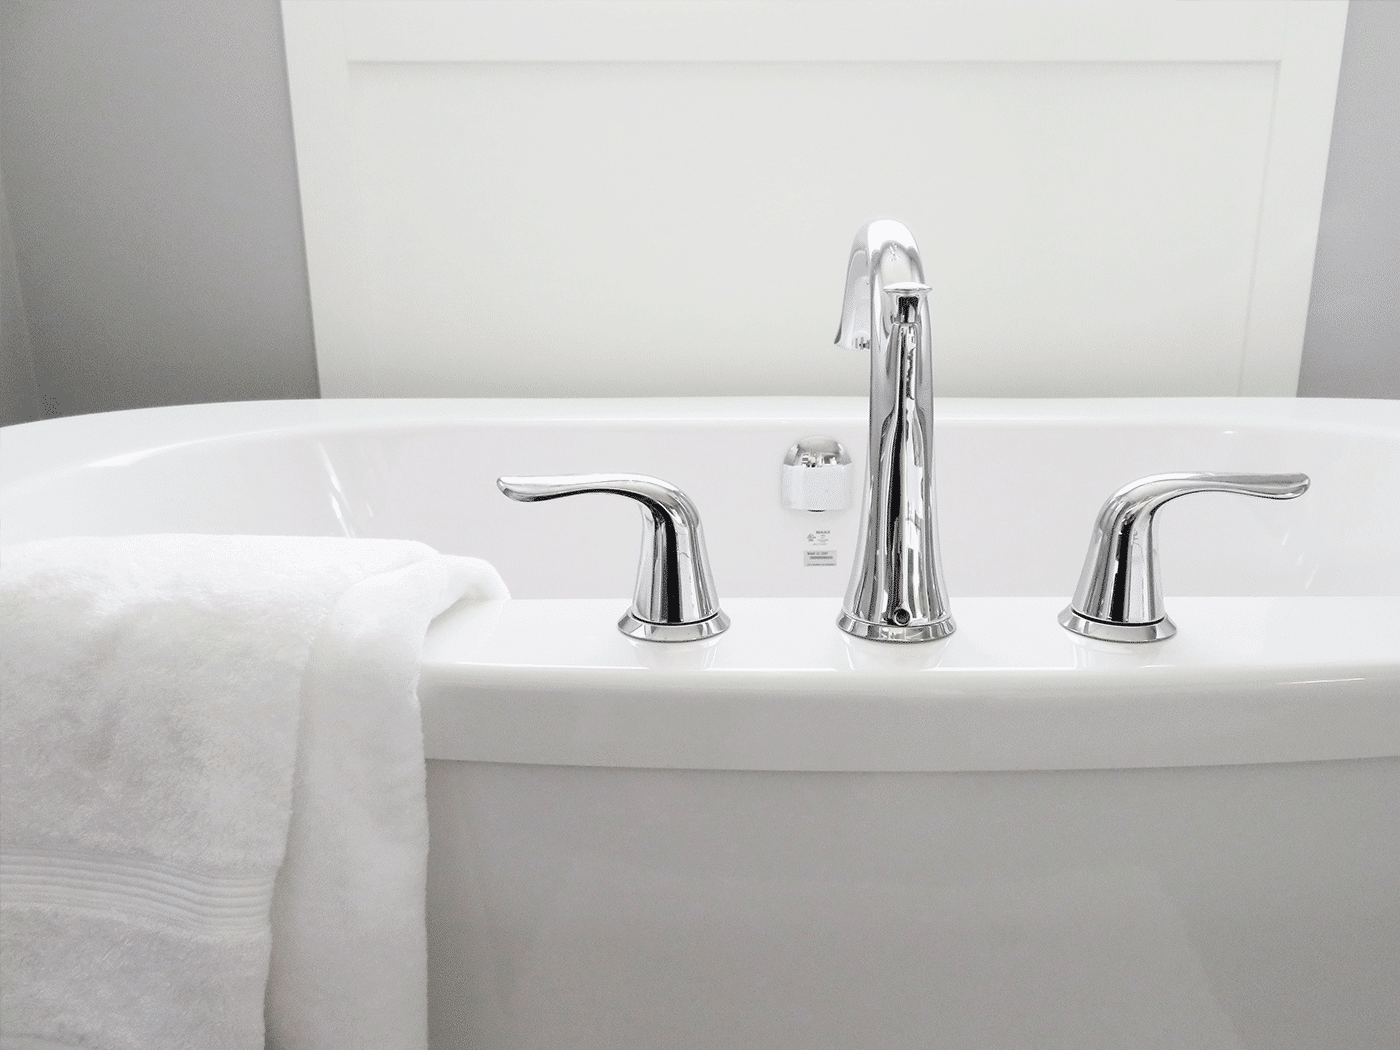 Mélangeur ou mitigeur : quel modèle de robinet salle de bain